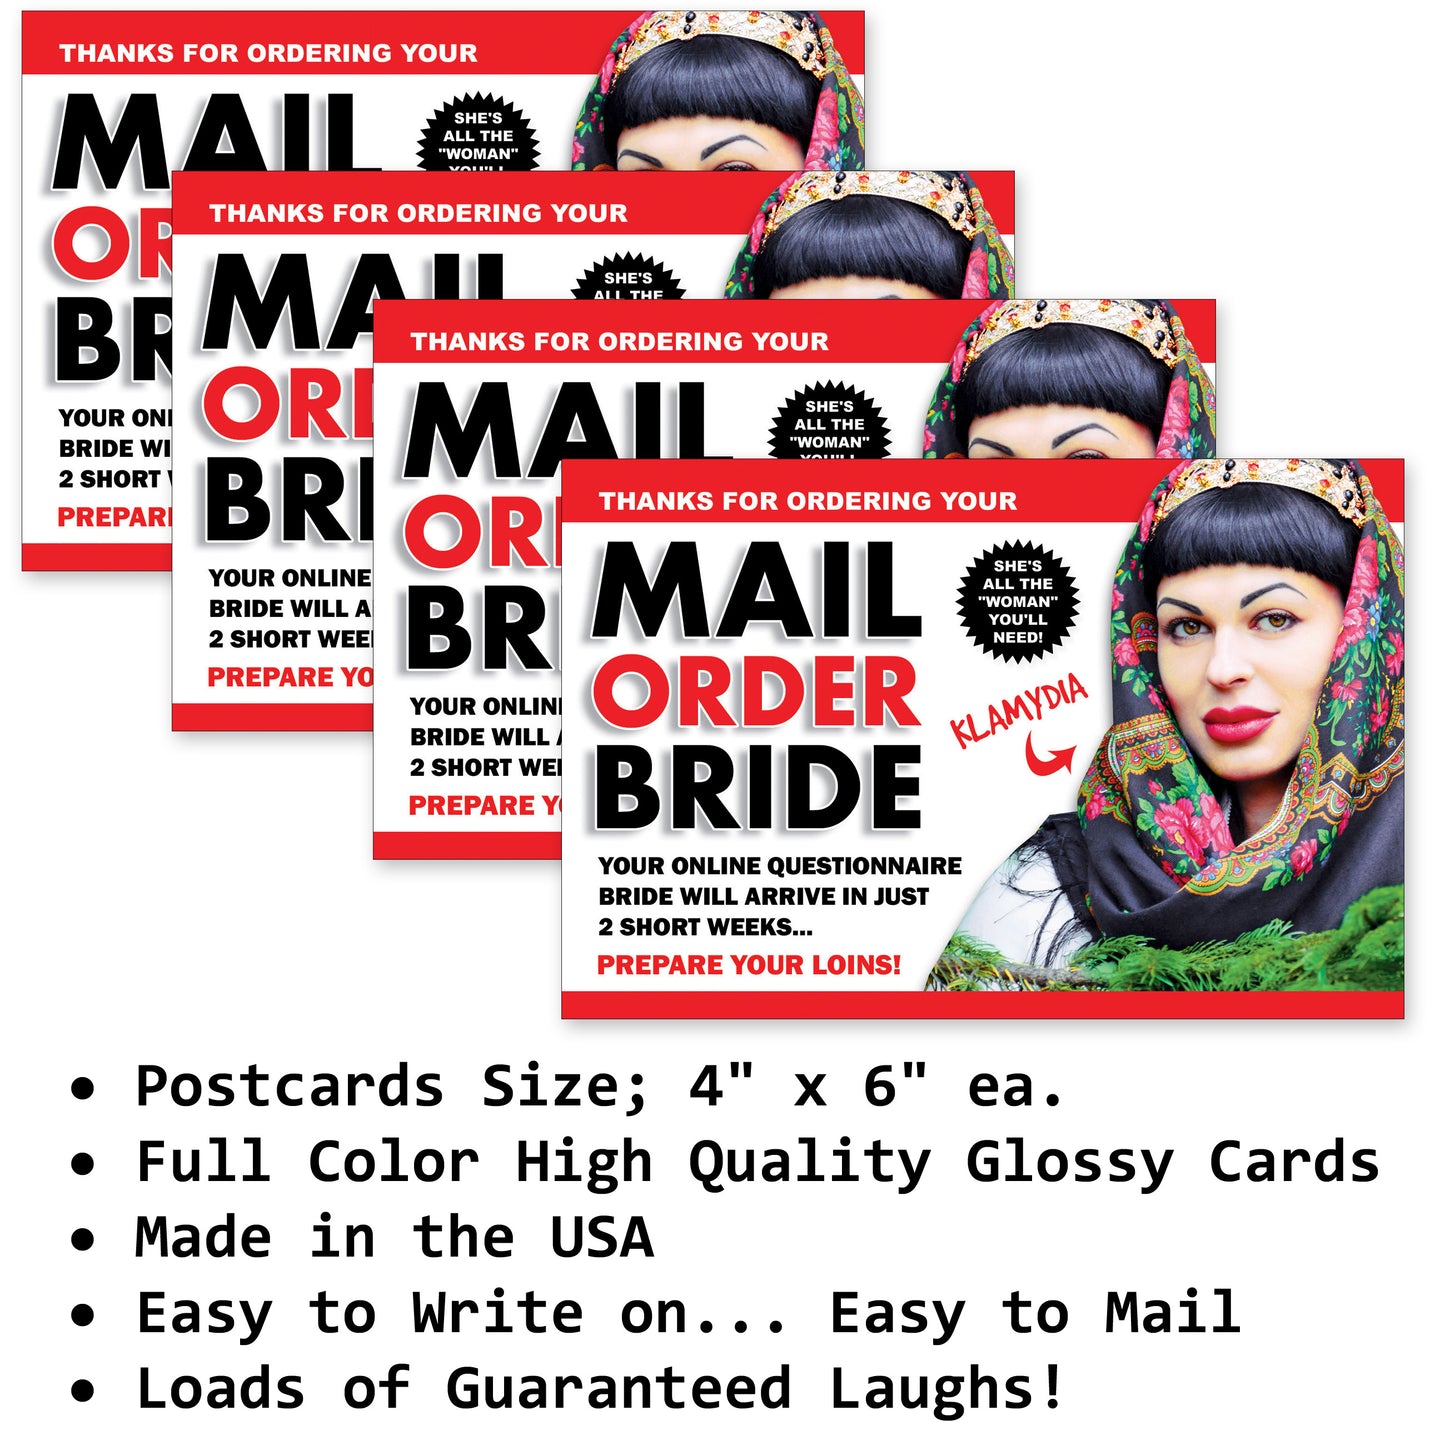 Mail Order Bride 4 Pack Prank Postcards